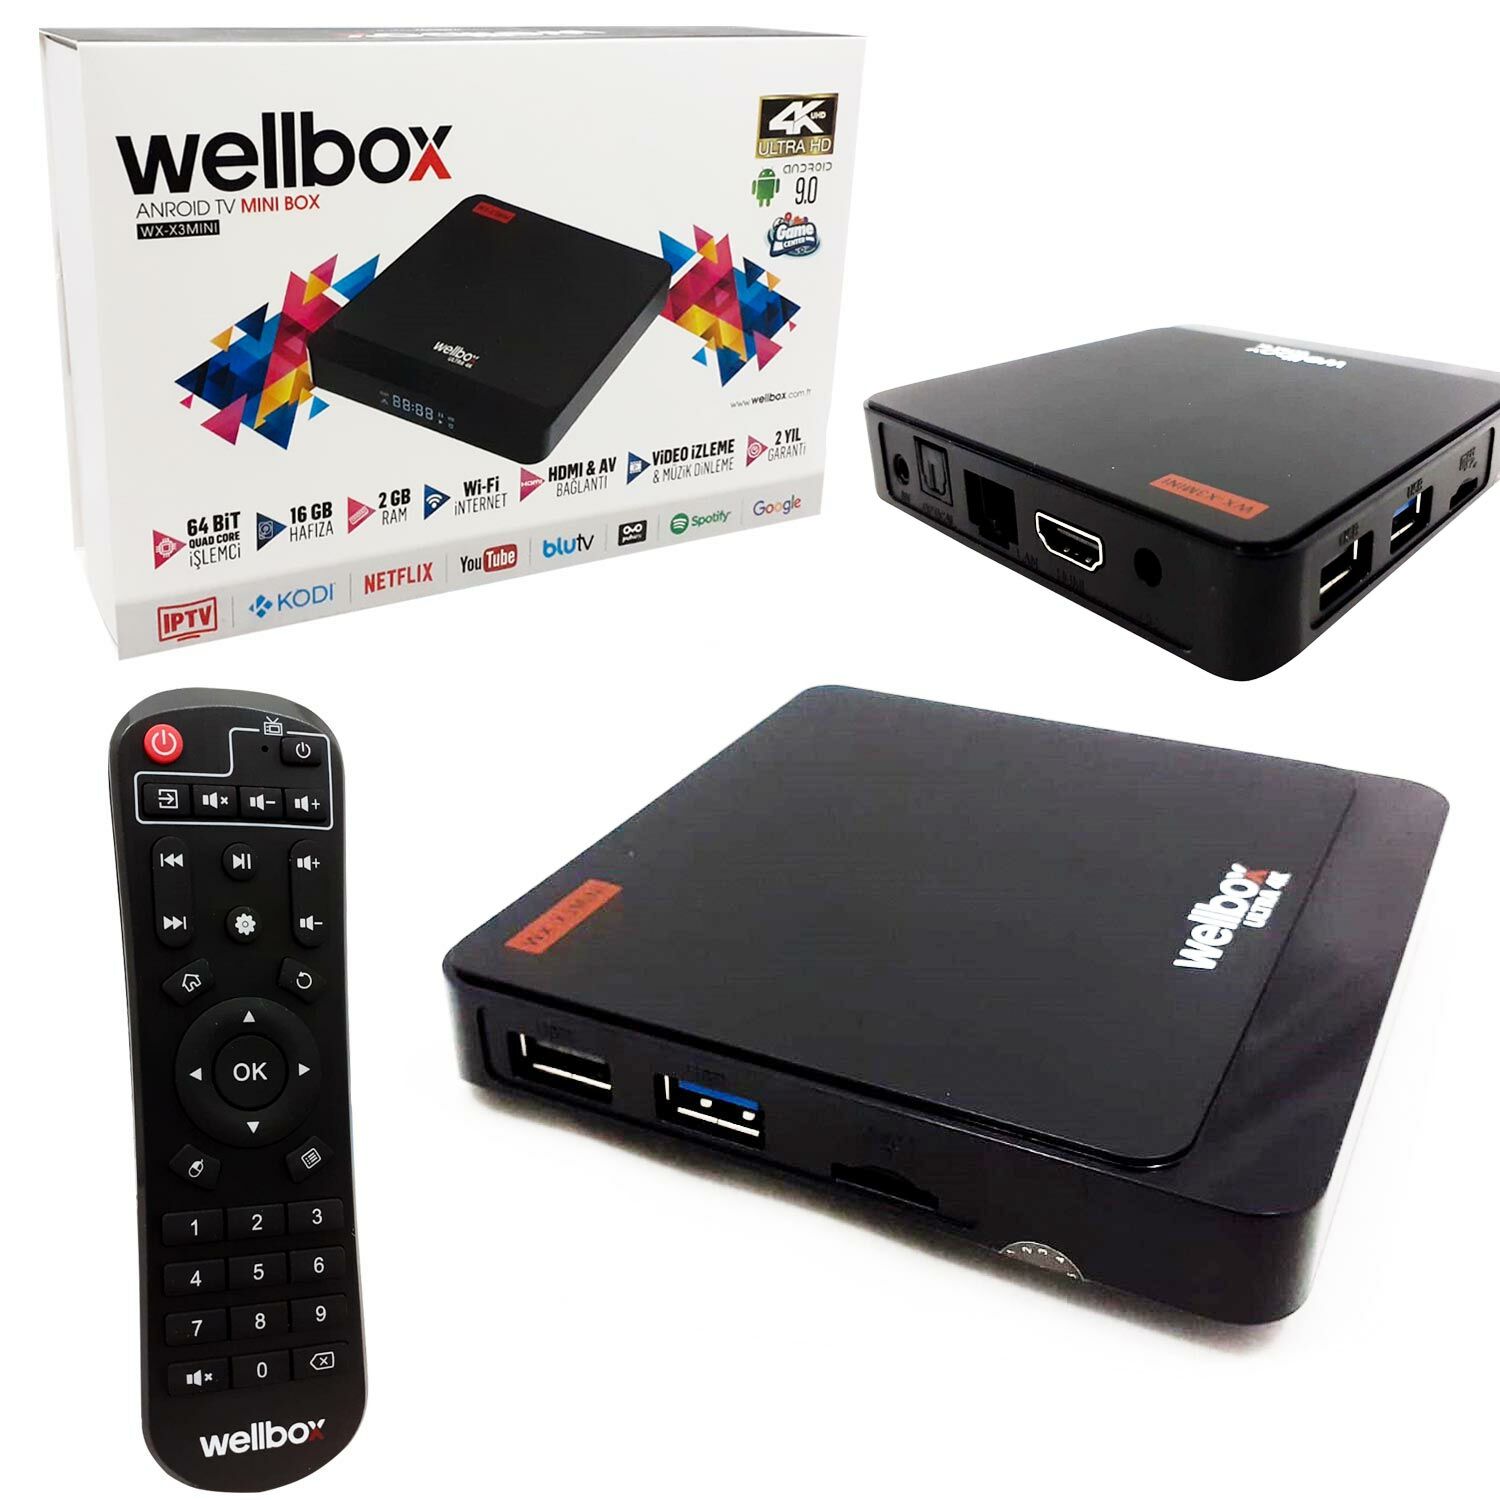 ANDROİD TV BOX 2+16GB WELLBOX WX-X3MINI